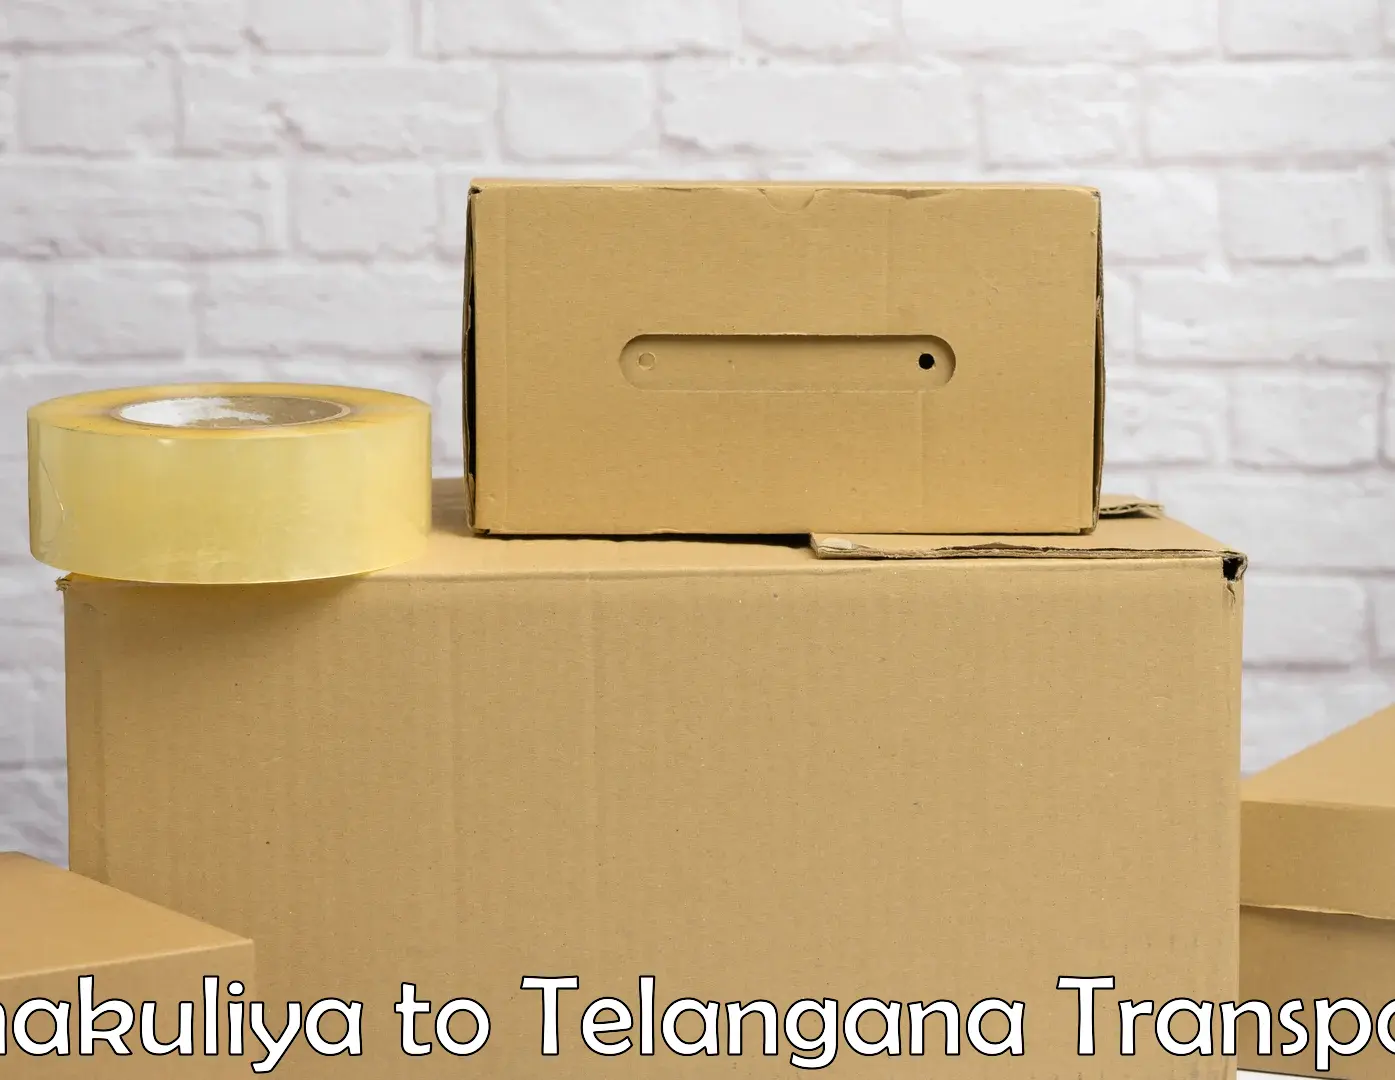 Transport services Chakuliya to Telangana